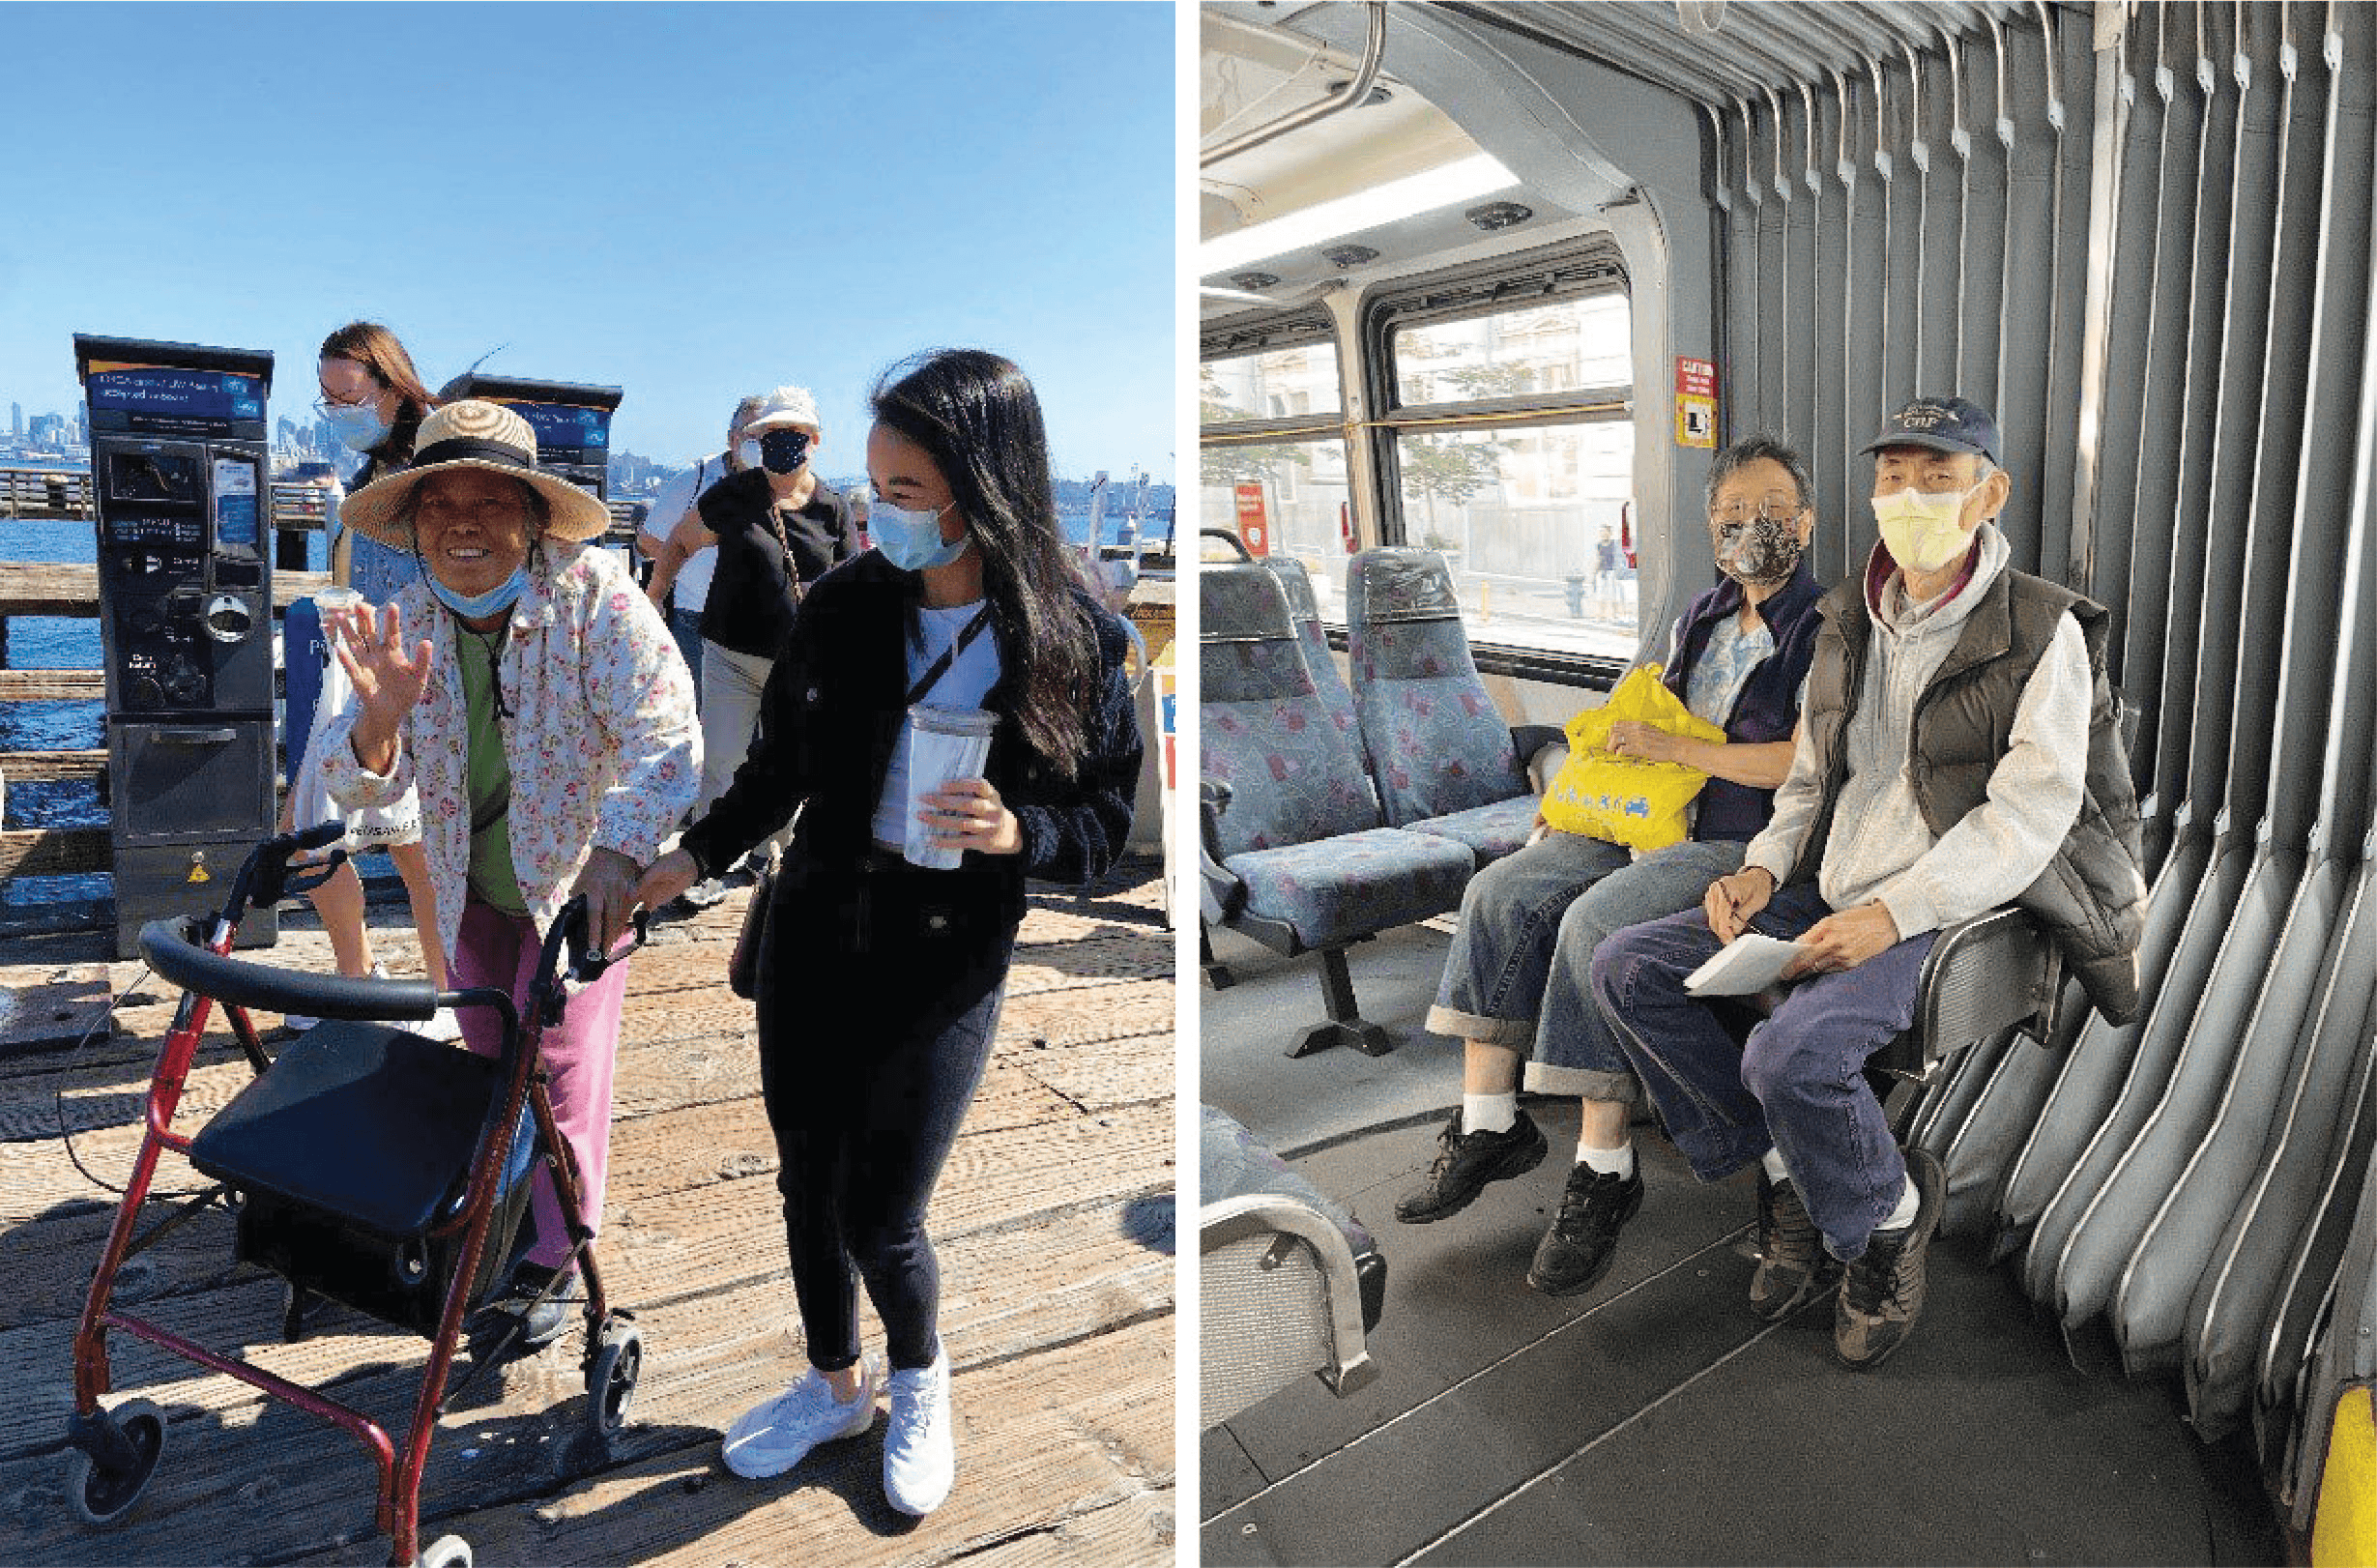 Los miembros de la comunidad de Seattle disfrutan de un día soleado en el vecindario Alki de West Seattle (izquierda) y un viaje en autobús (derecha) durante sus excursiones en transporte público en el 2021.